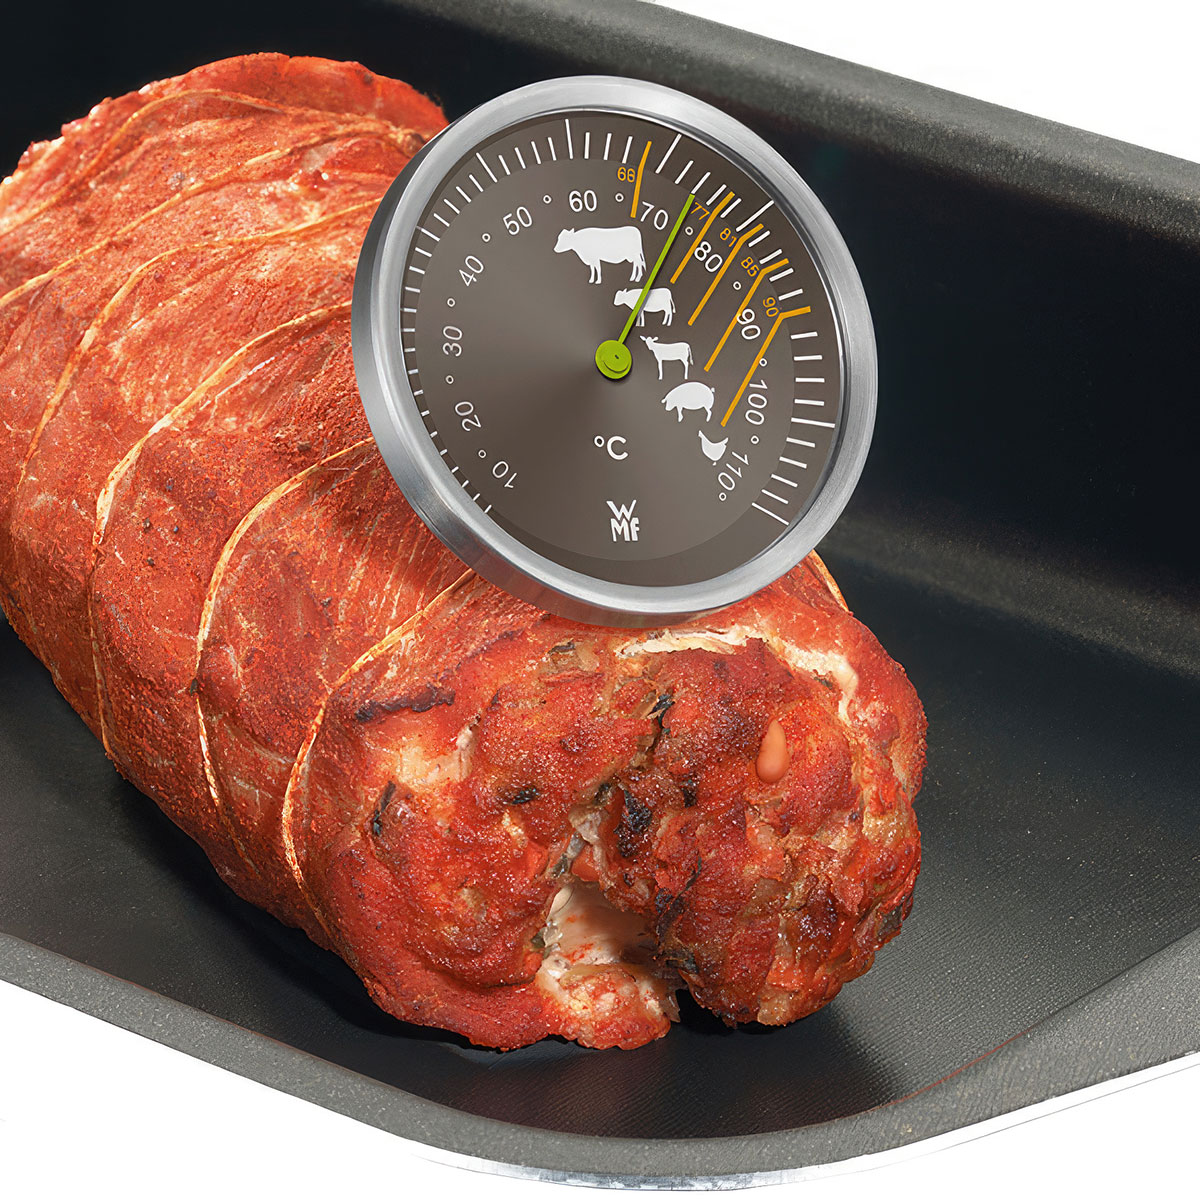 электронный термометр shiny kitchen для мяса a5301 Термометр для мяса WMF Scala